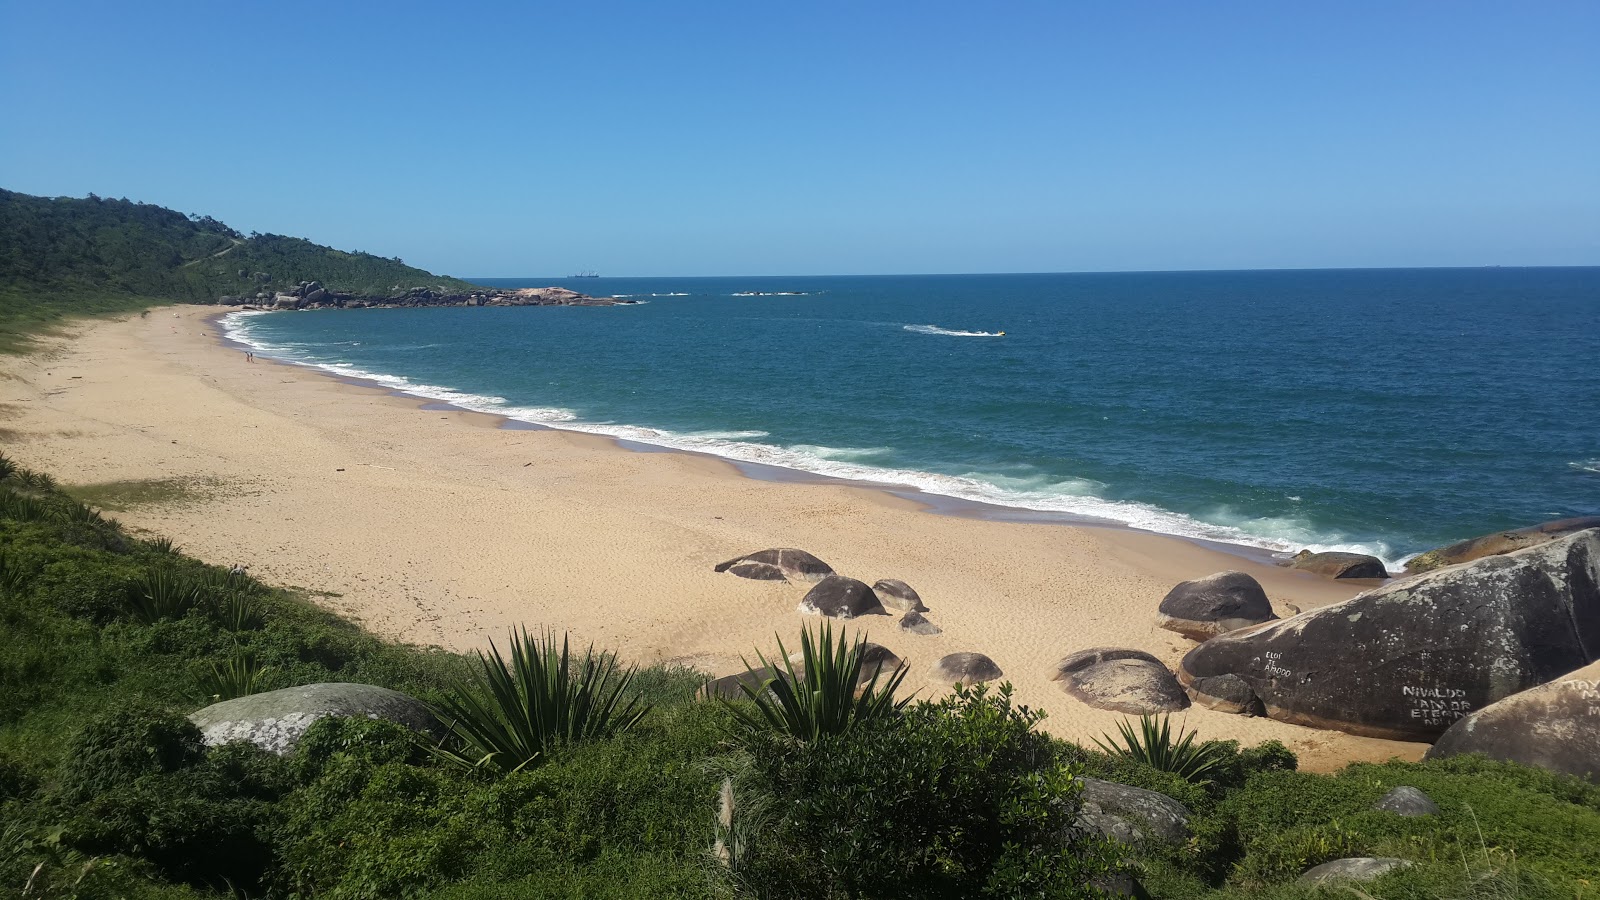 Praia de Taquarinhas'in fotoğrafı geniş plaj ile birlikte